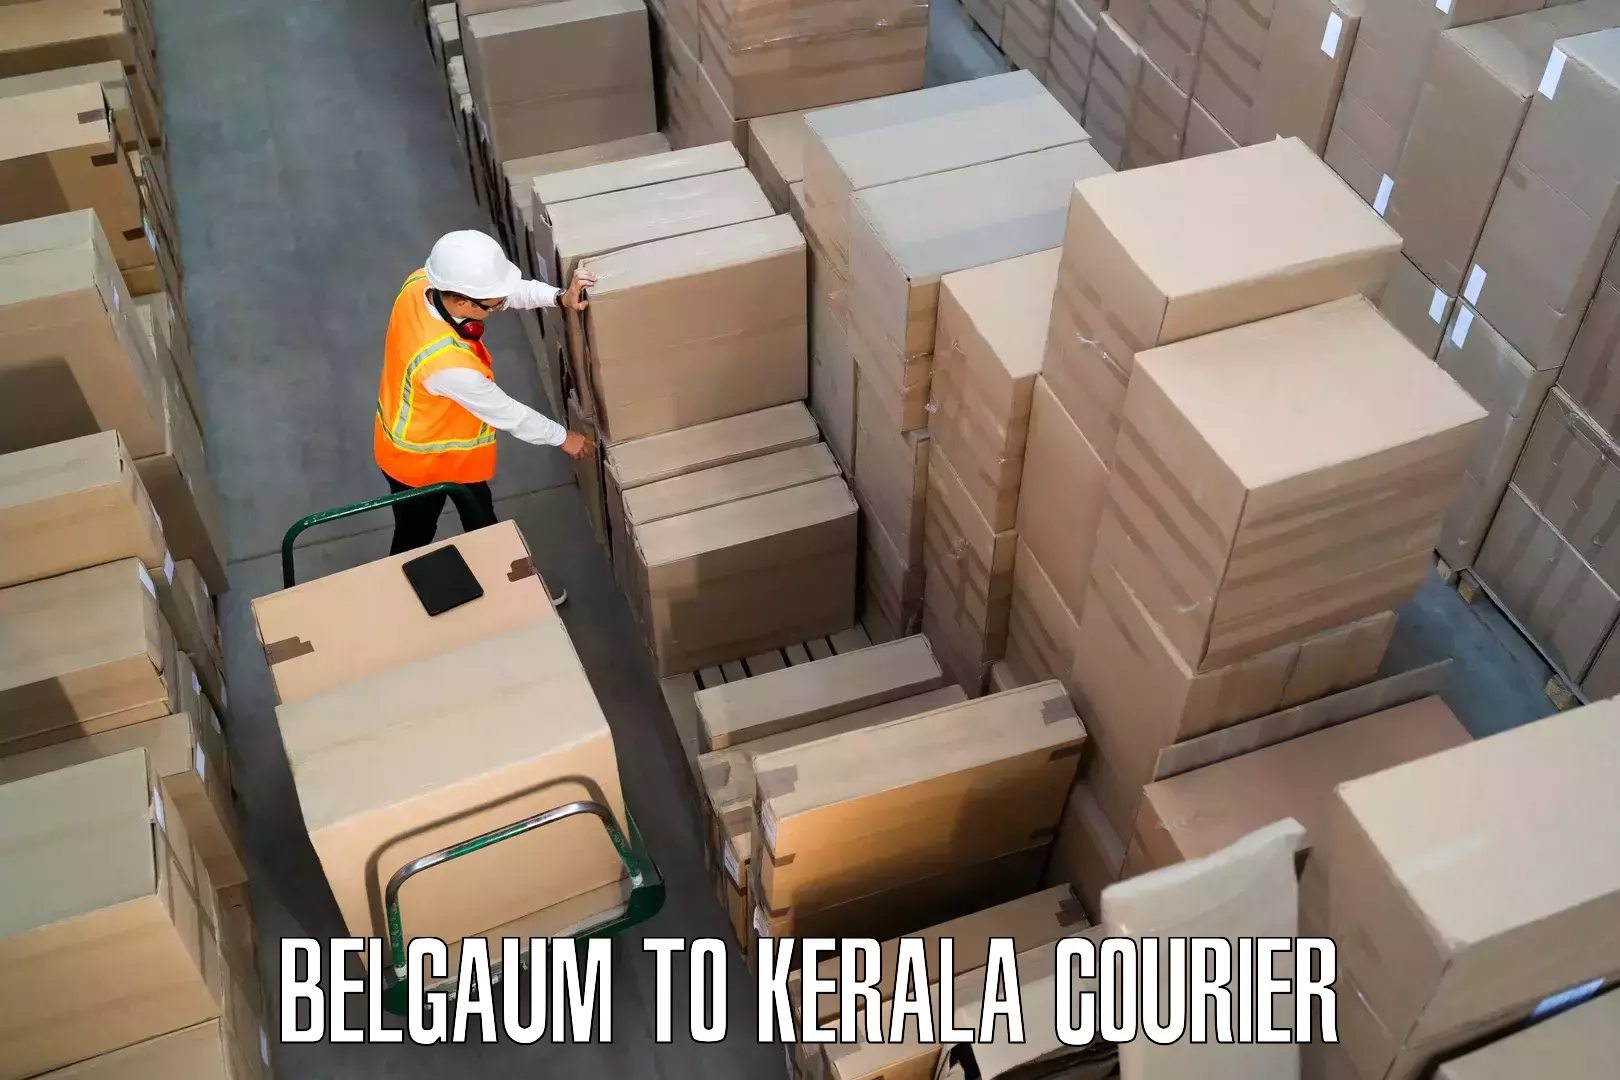 Stress-free furniture moving Belgaum to Kerala